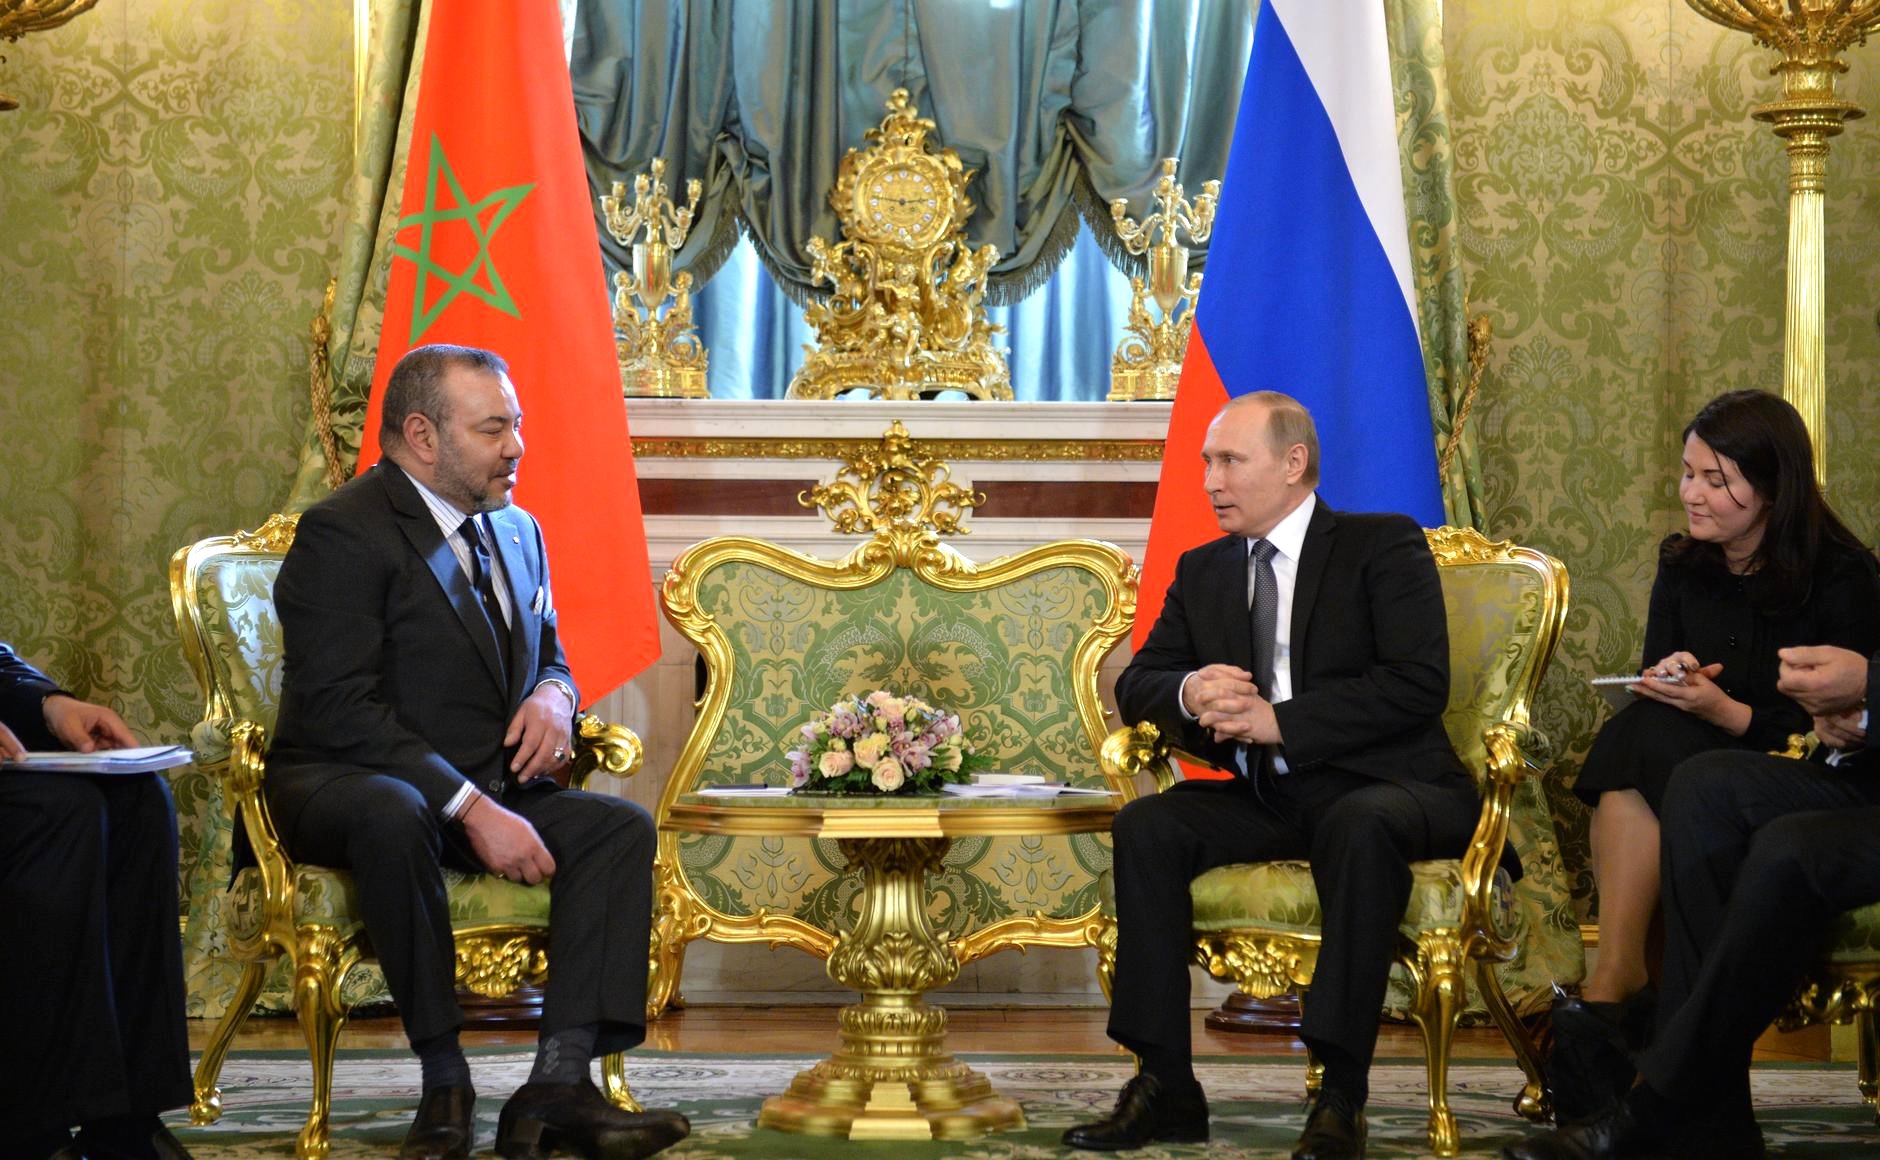 الملك يعزي الرئيس الروسي بعد الاعتداء الإرهابي الشنيع